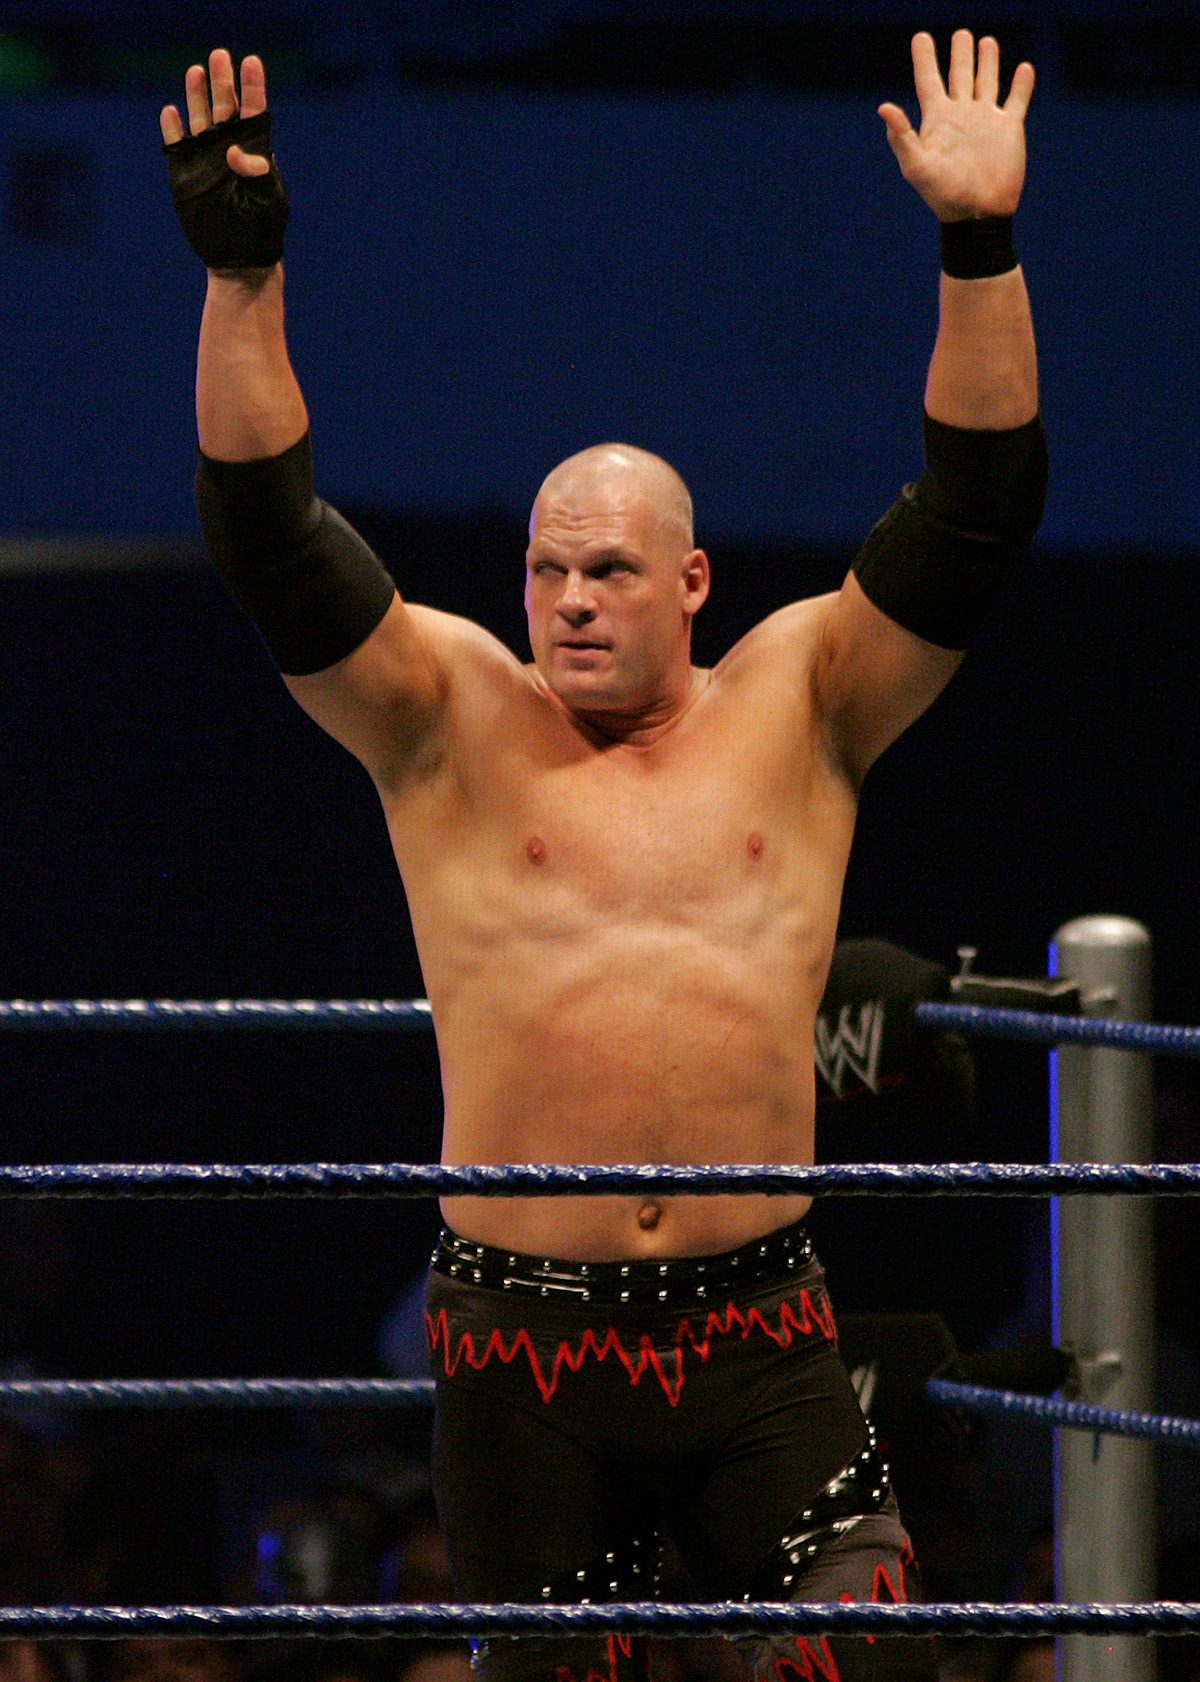 WWE Wrestler Kane Running for Mayor in Tennessee City